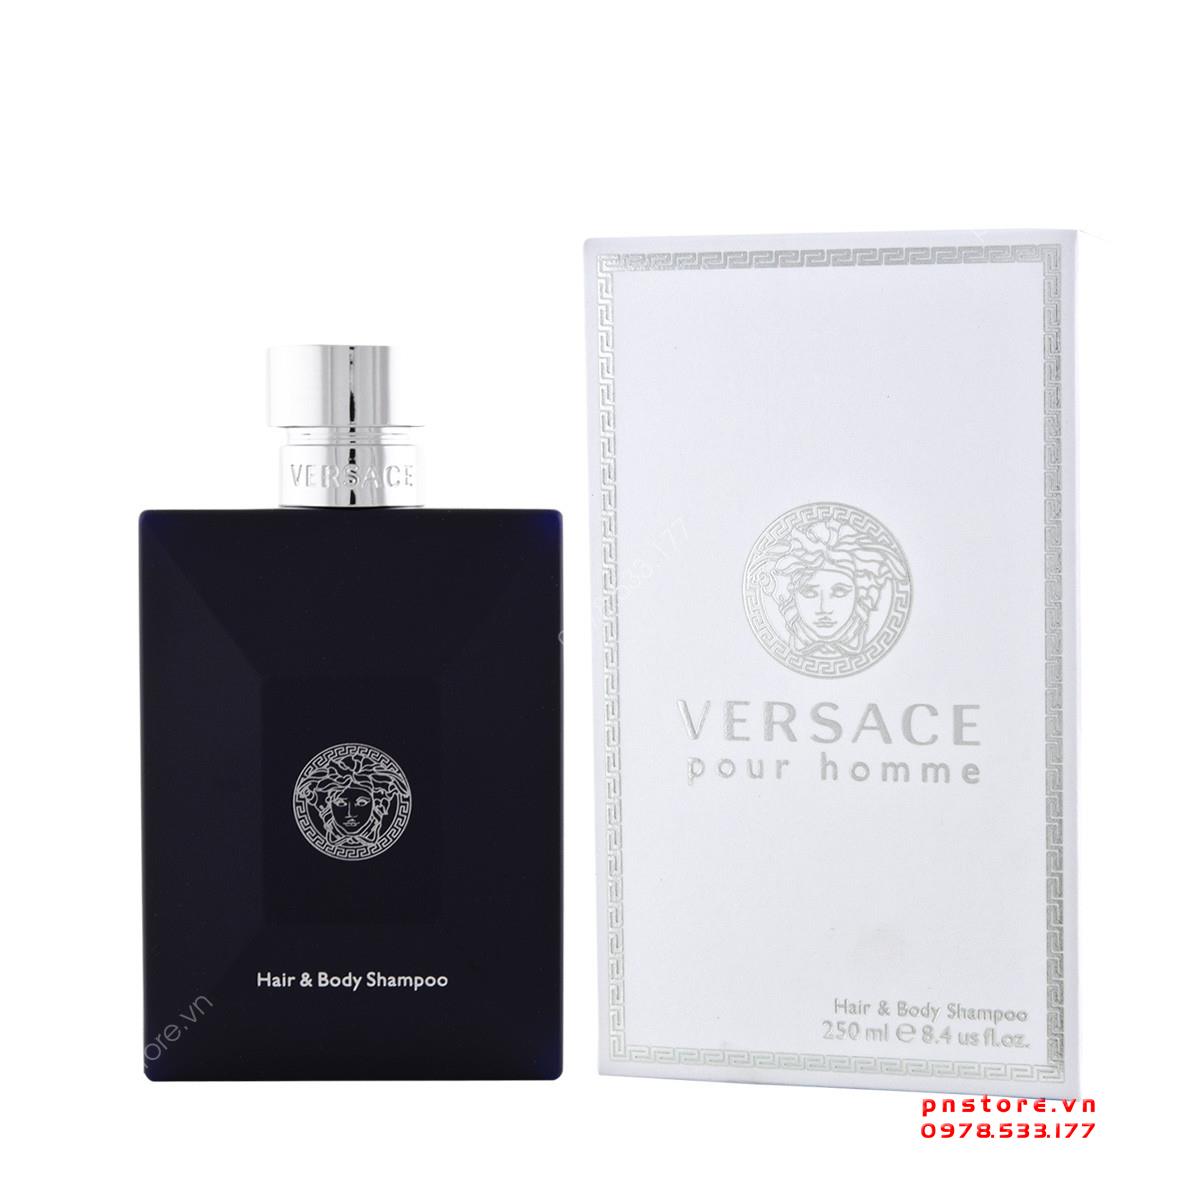 Sữa tắm gội nước hoa nam Versace Pour Homme 250ml chính hãng - PN99981